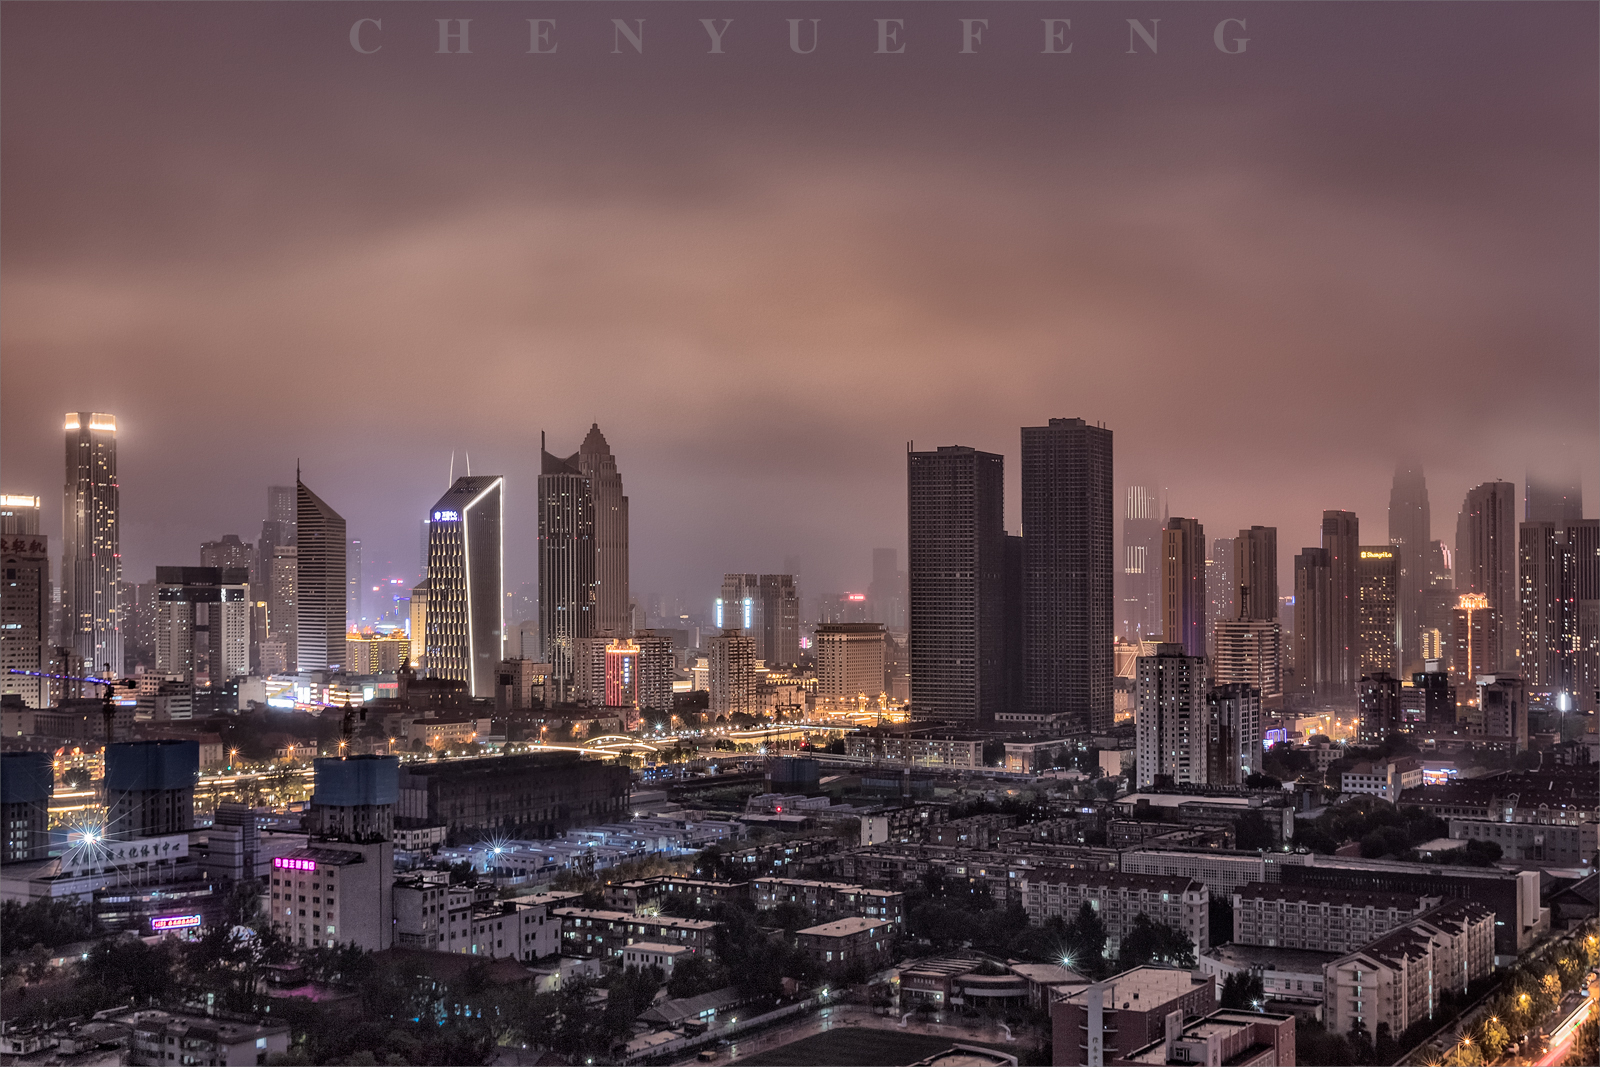 雨中及前后,炫美的天津 (天津城市风光发布第0